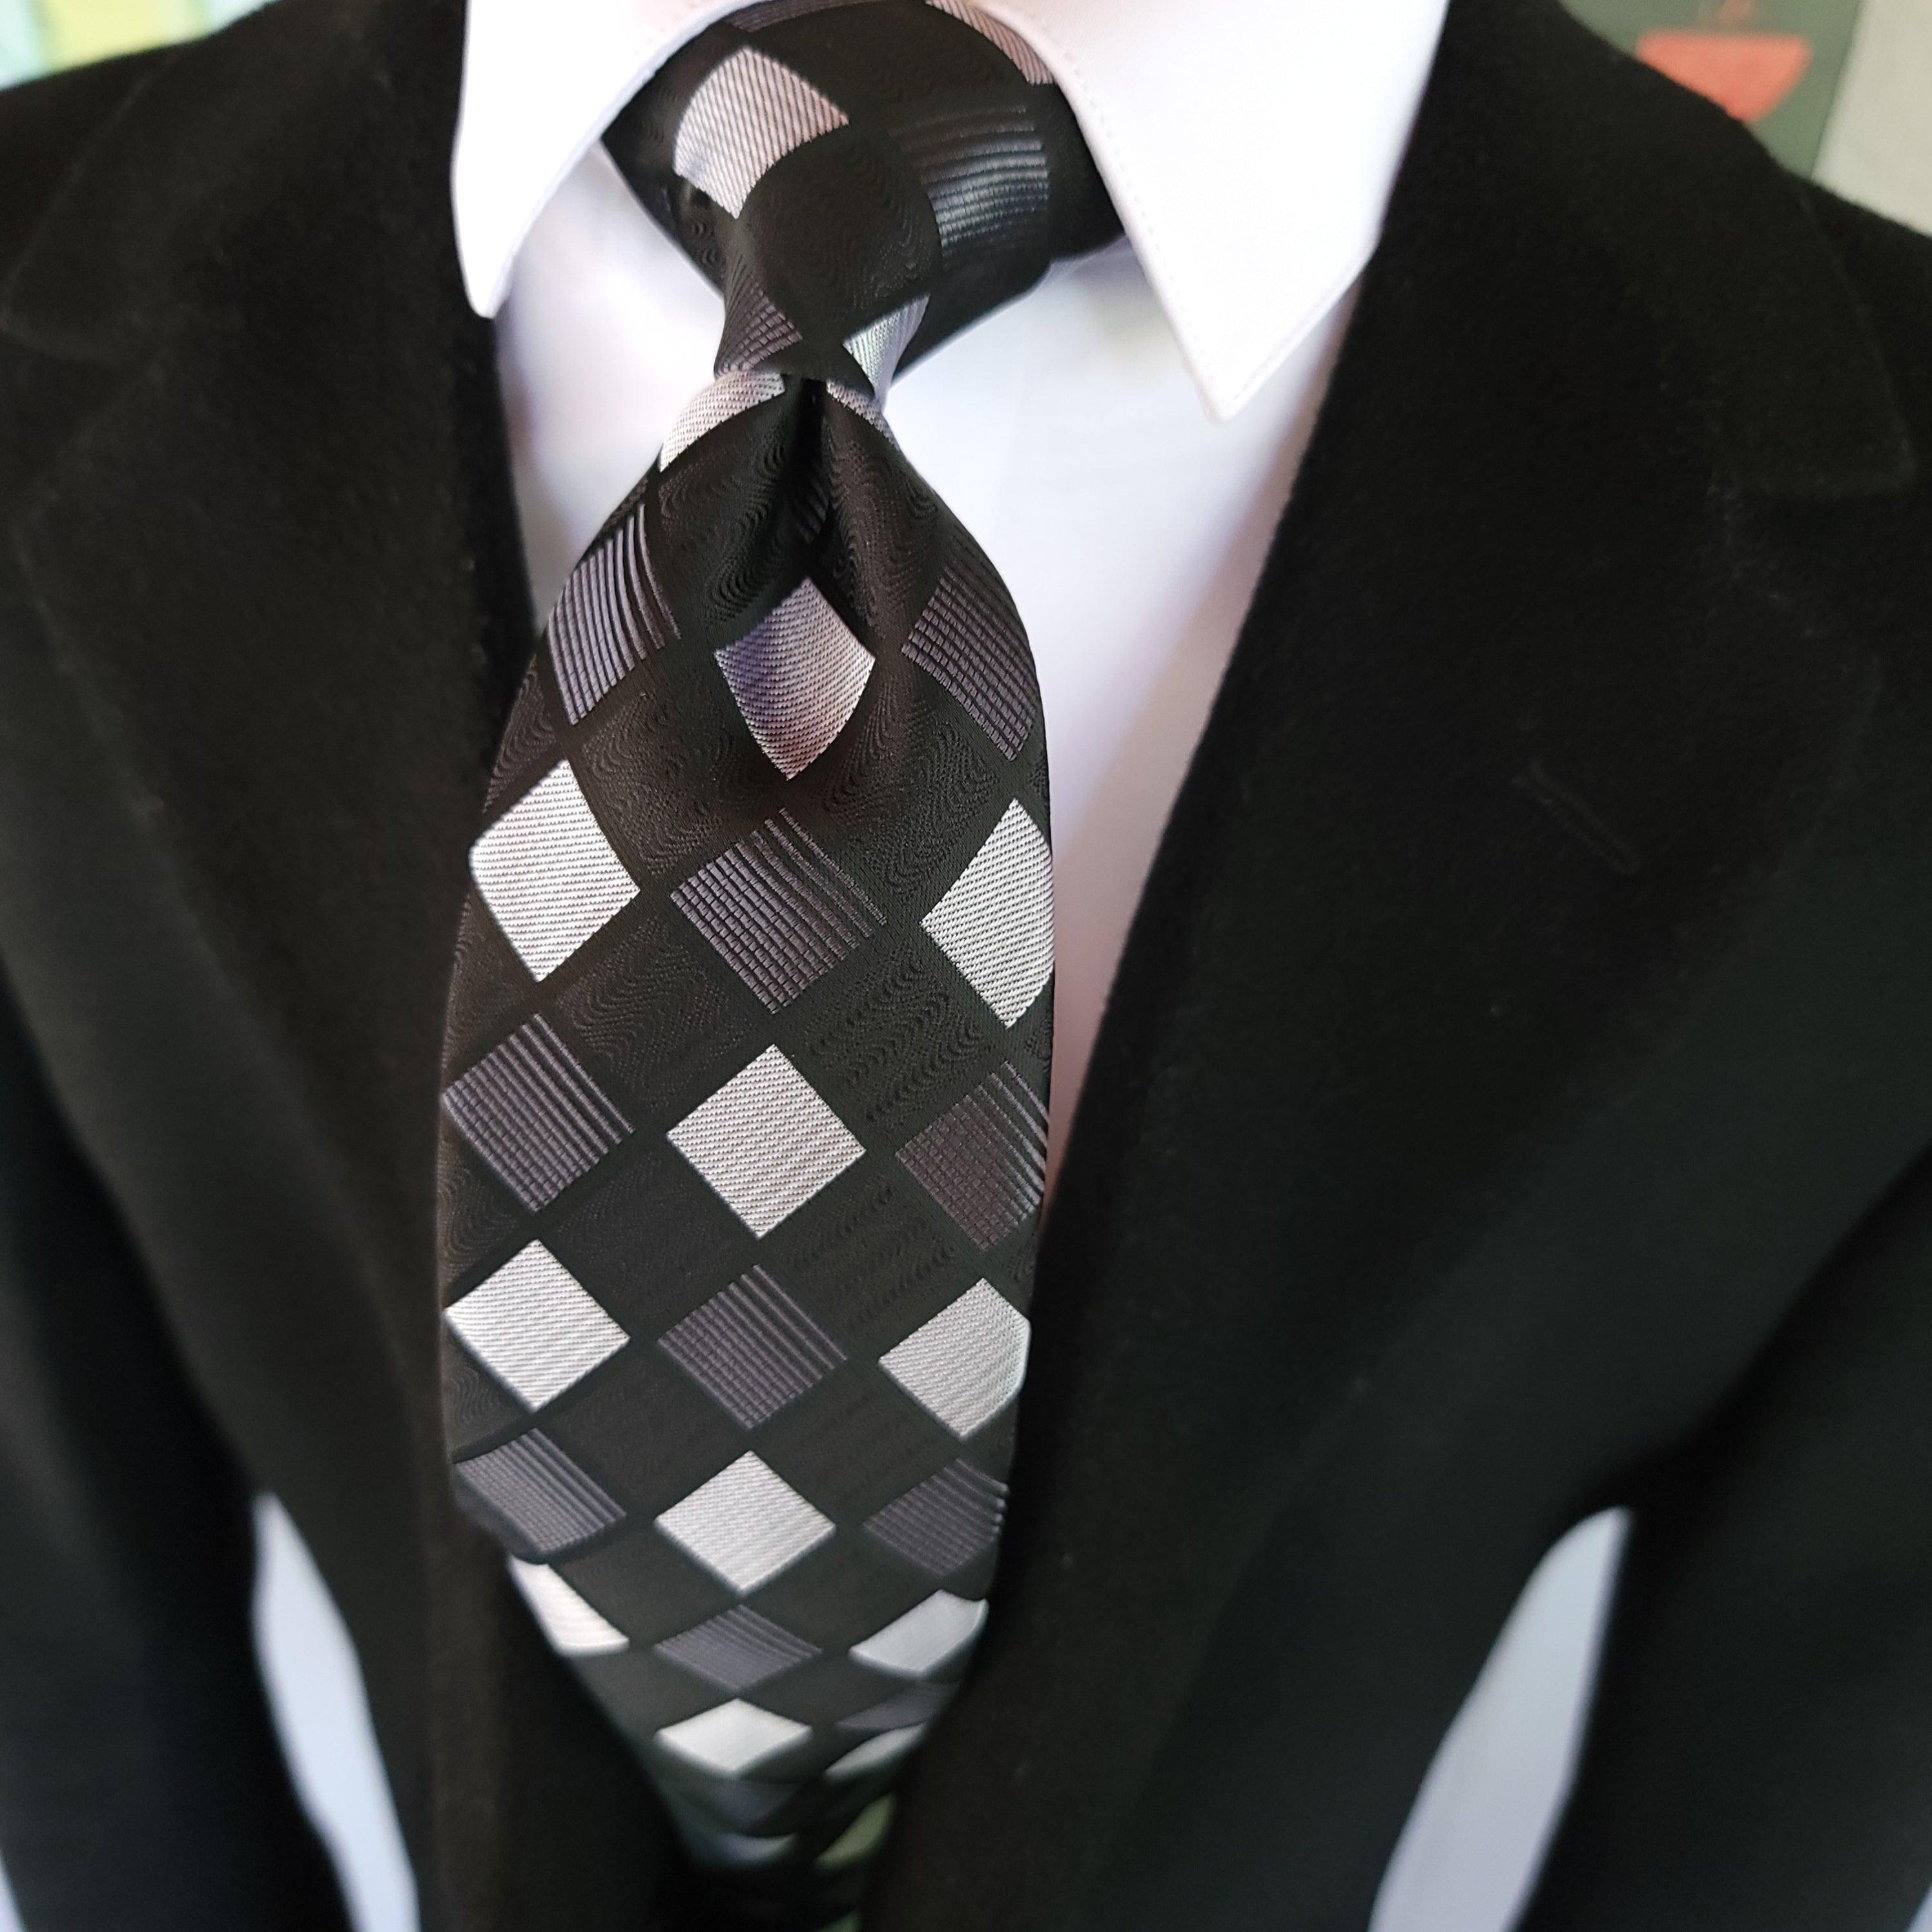 Black White Plaid Silk Tie Pocket Square Cufflink Set - STYLETIE